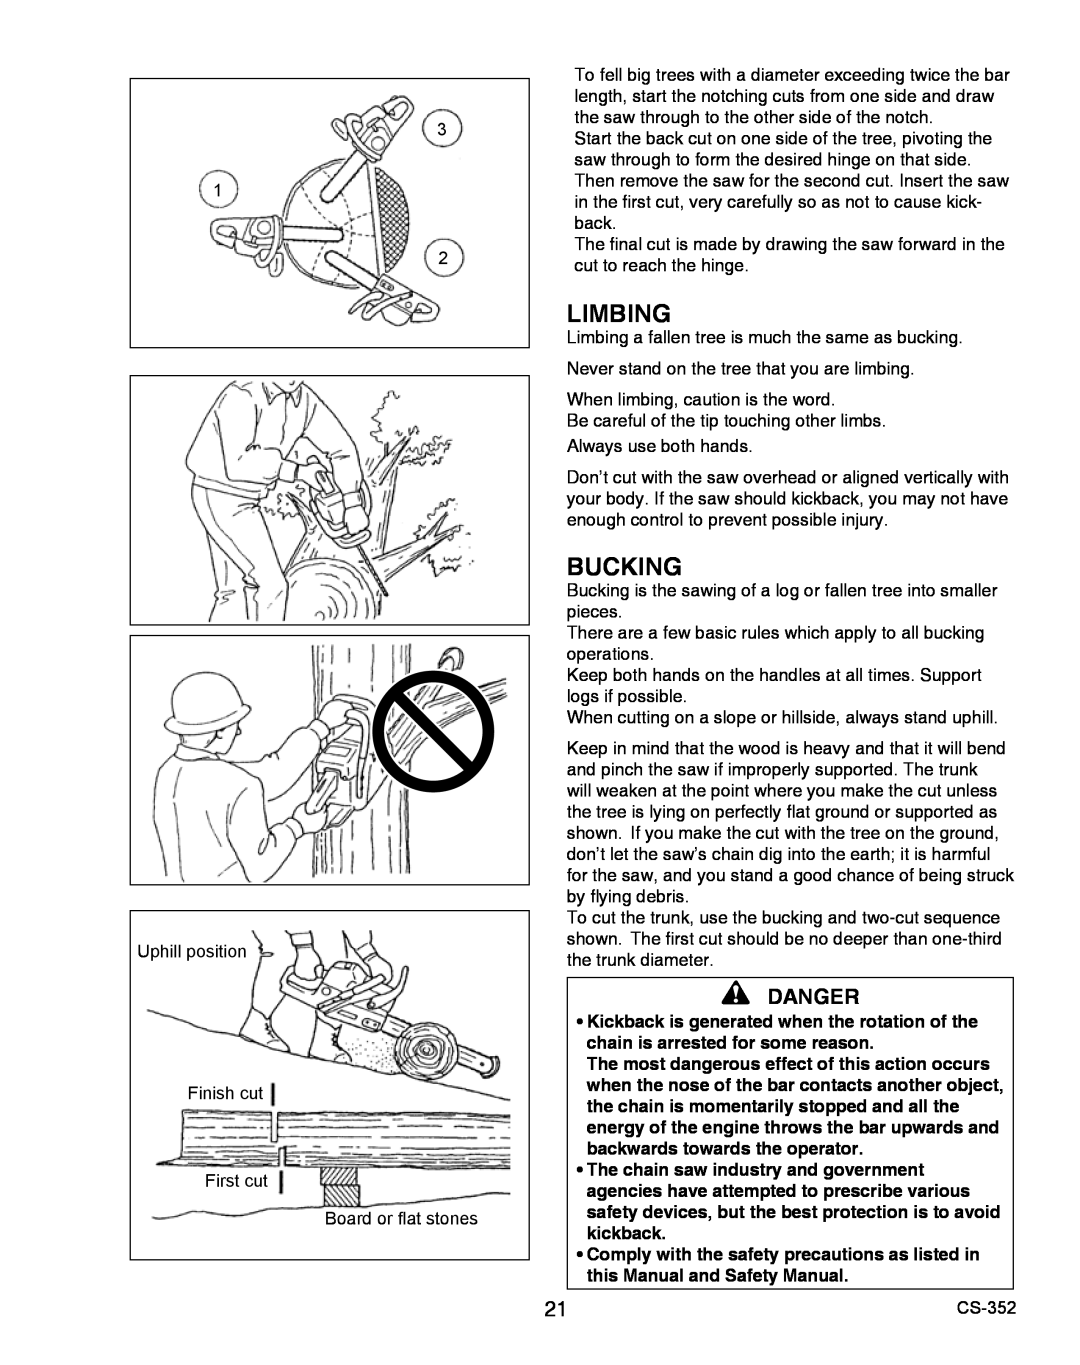 Echo X750020201 instruction manual Limbing, Bucking, Danger 